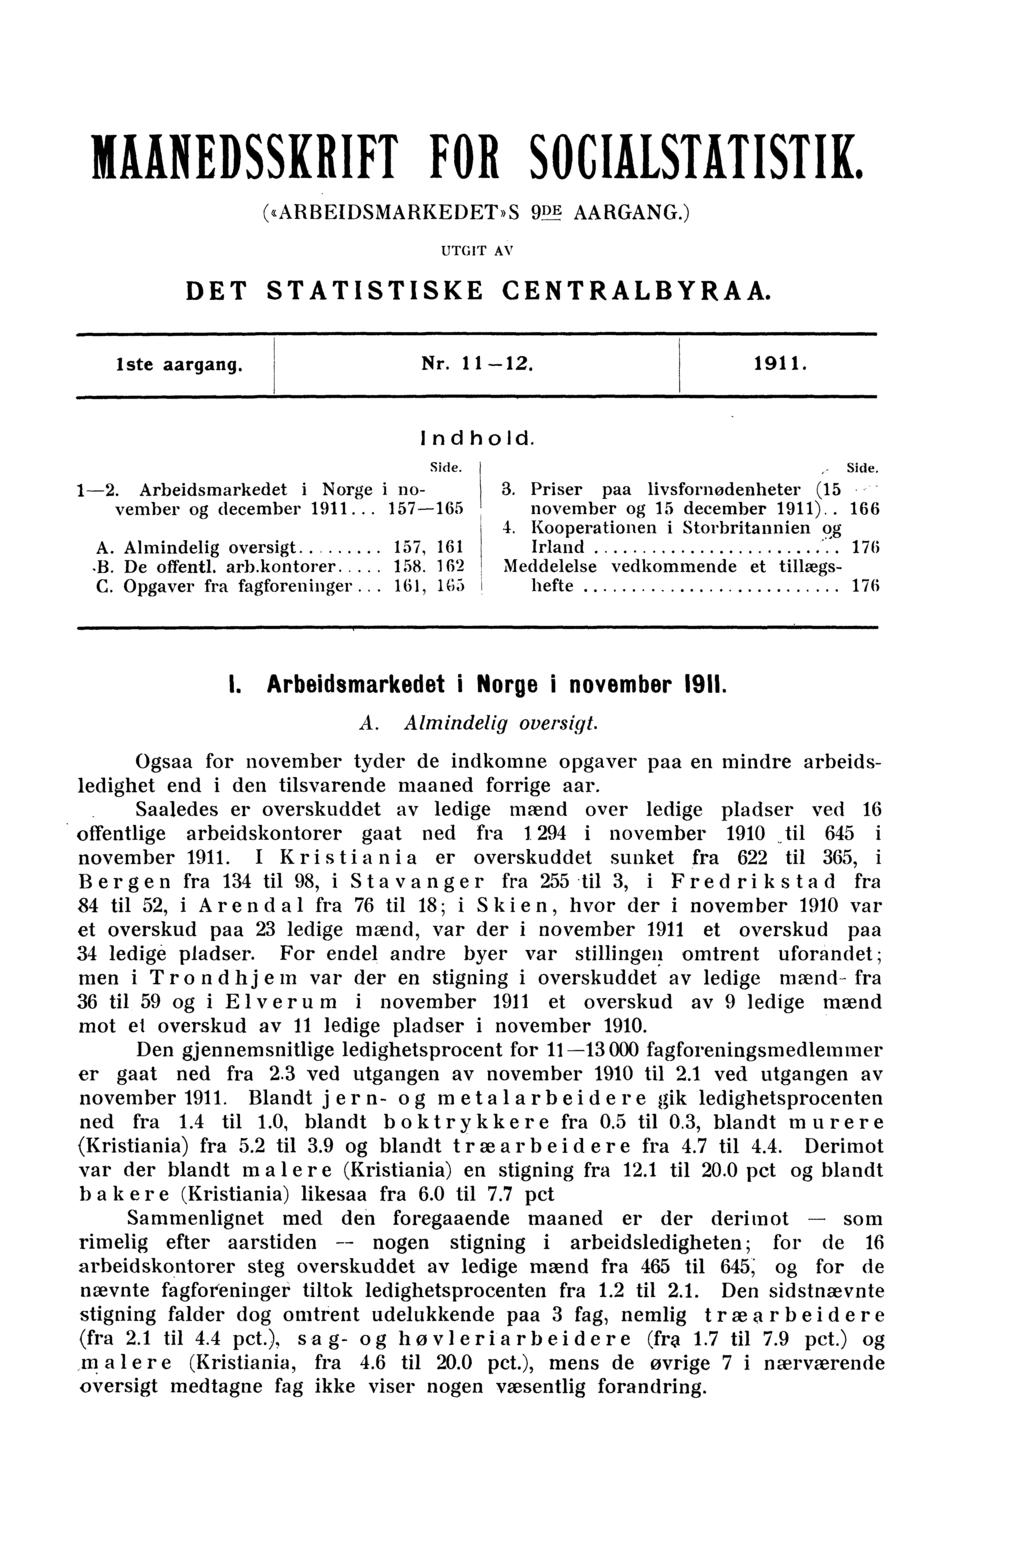 HÅNEDSSKRIFT FOR SOCIRSIVISTIK. («ARBEIDSMARKEDET»S 9DE AARGANG.) UTGIT AV DET STATISTISKE CENTRALBYRAA. iste aargang. Nr. 11-12.1911. Side. 1-2. Arbeidsmarkedet i Norge i november og december 1911.